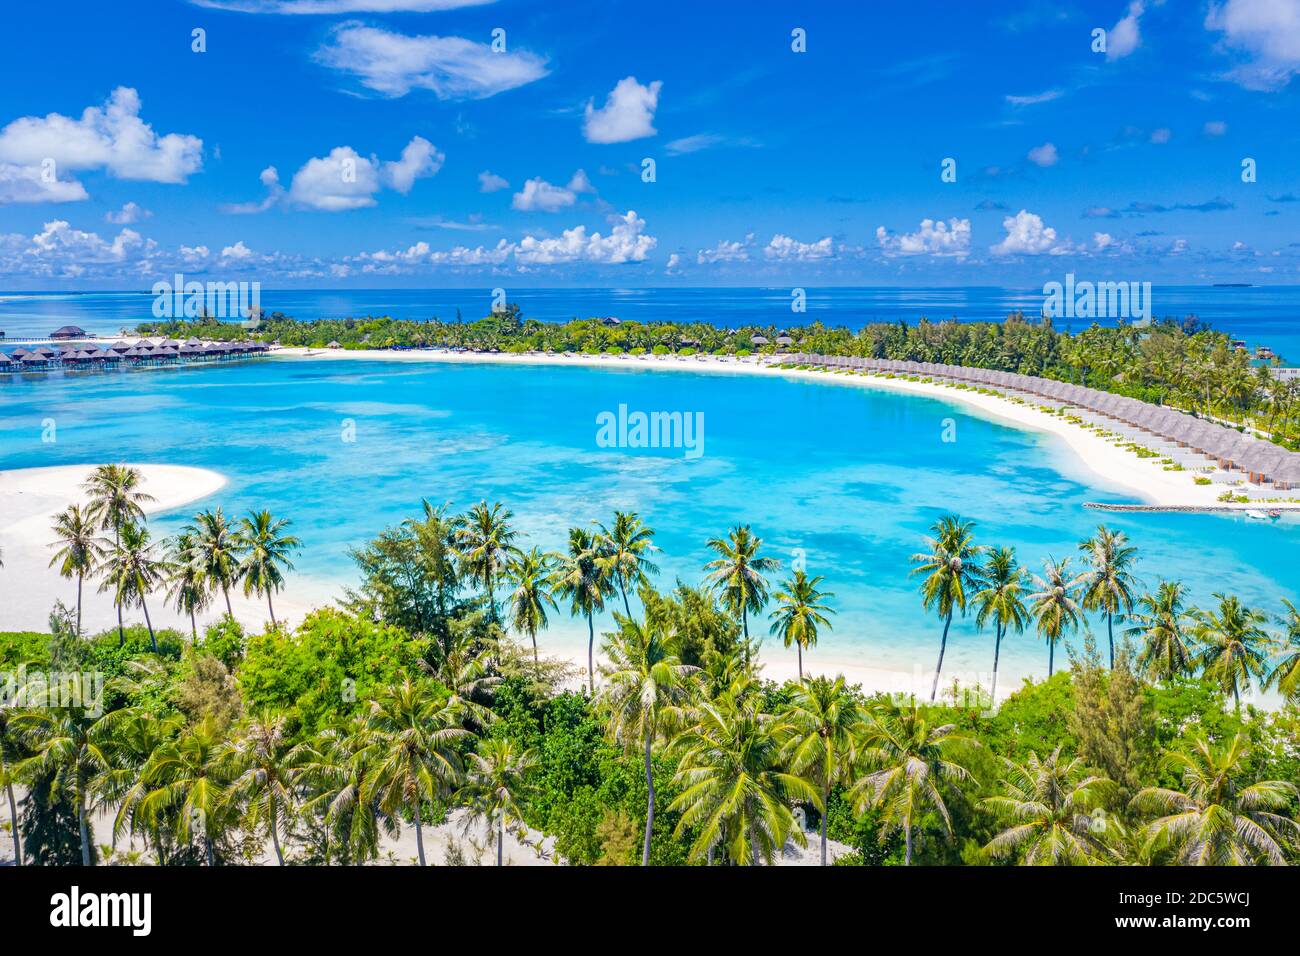 Luftlandschaft mit tropischen Resort-Villen, Bungalow, Palmen und wunderschönem Meer. Reiseziel, Luxusurlaub, Sommer Natur Szene Stockfoto